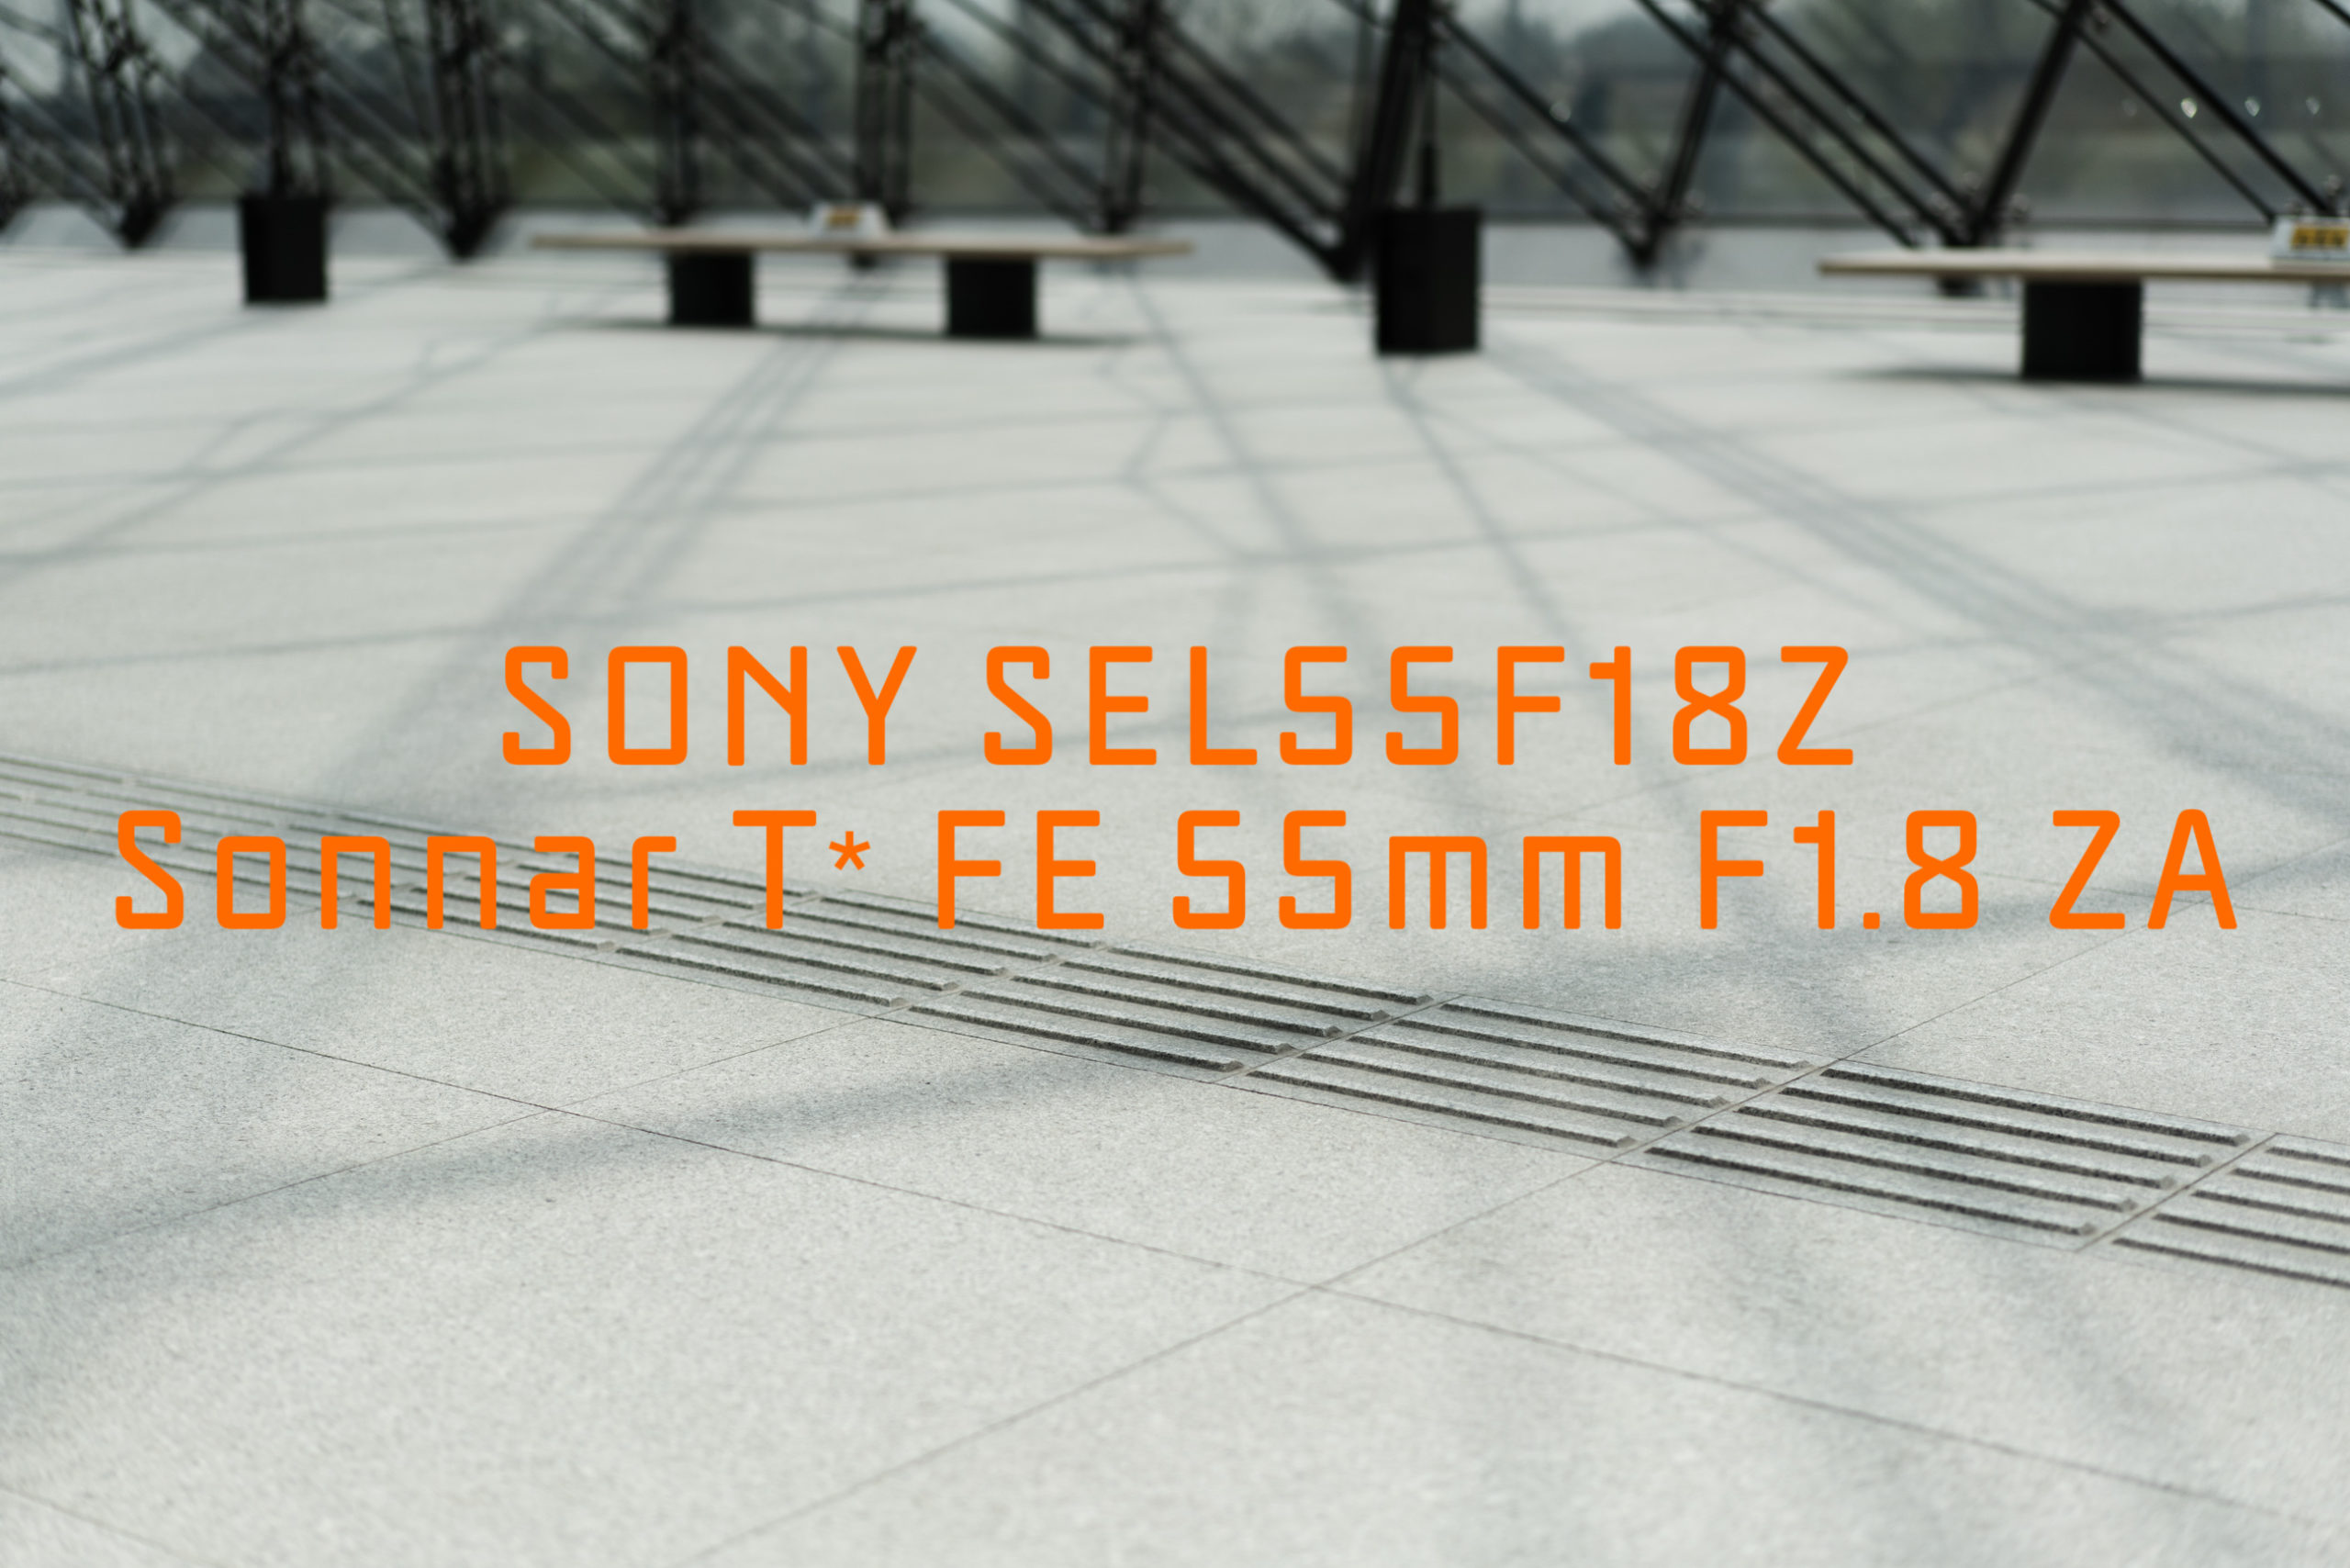 SONY SEL55F18Z Sonnar T* FE 55mm F1.8 ZA - YM-PHOTO BLOG